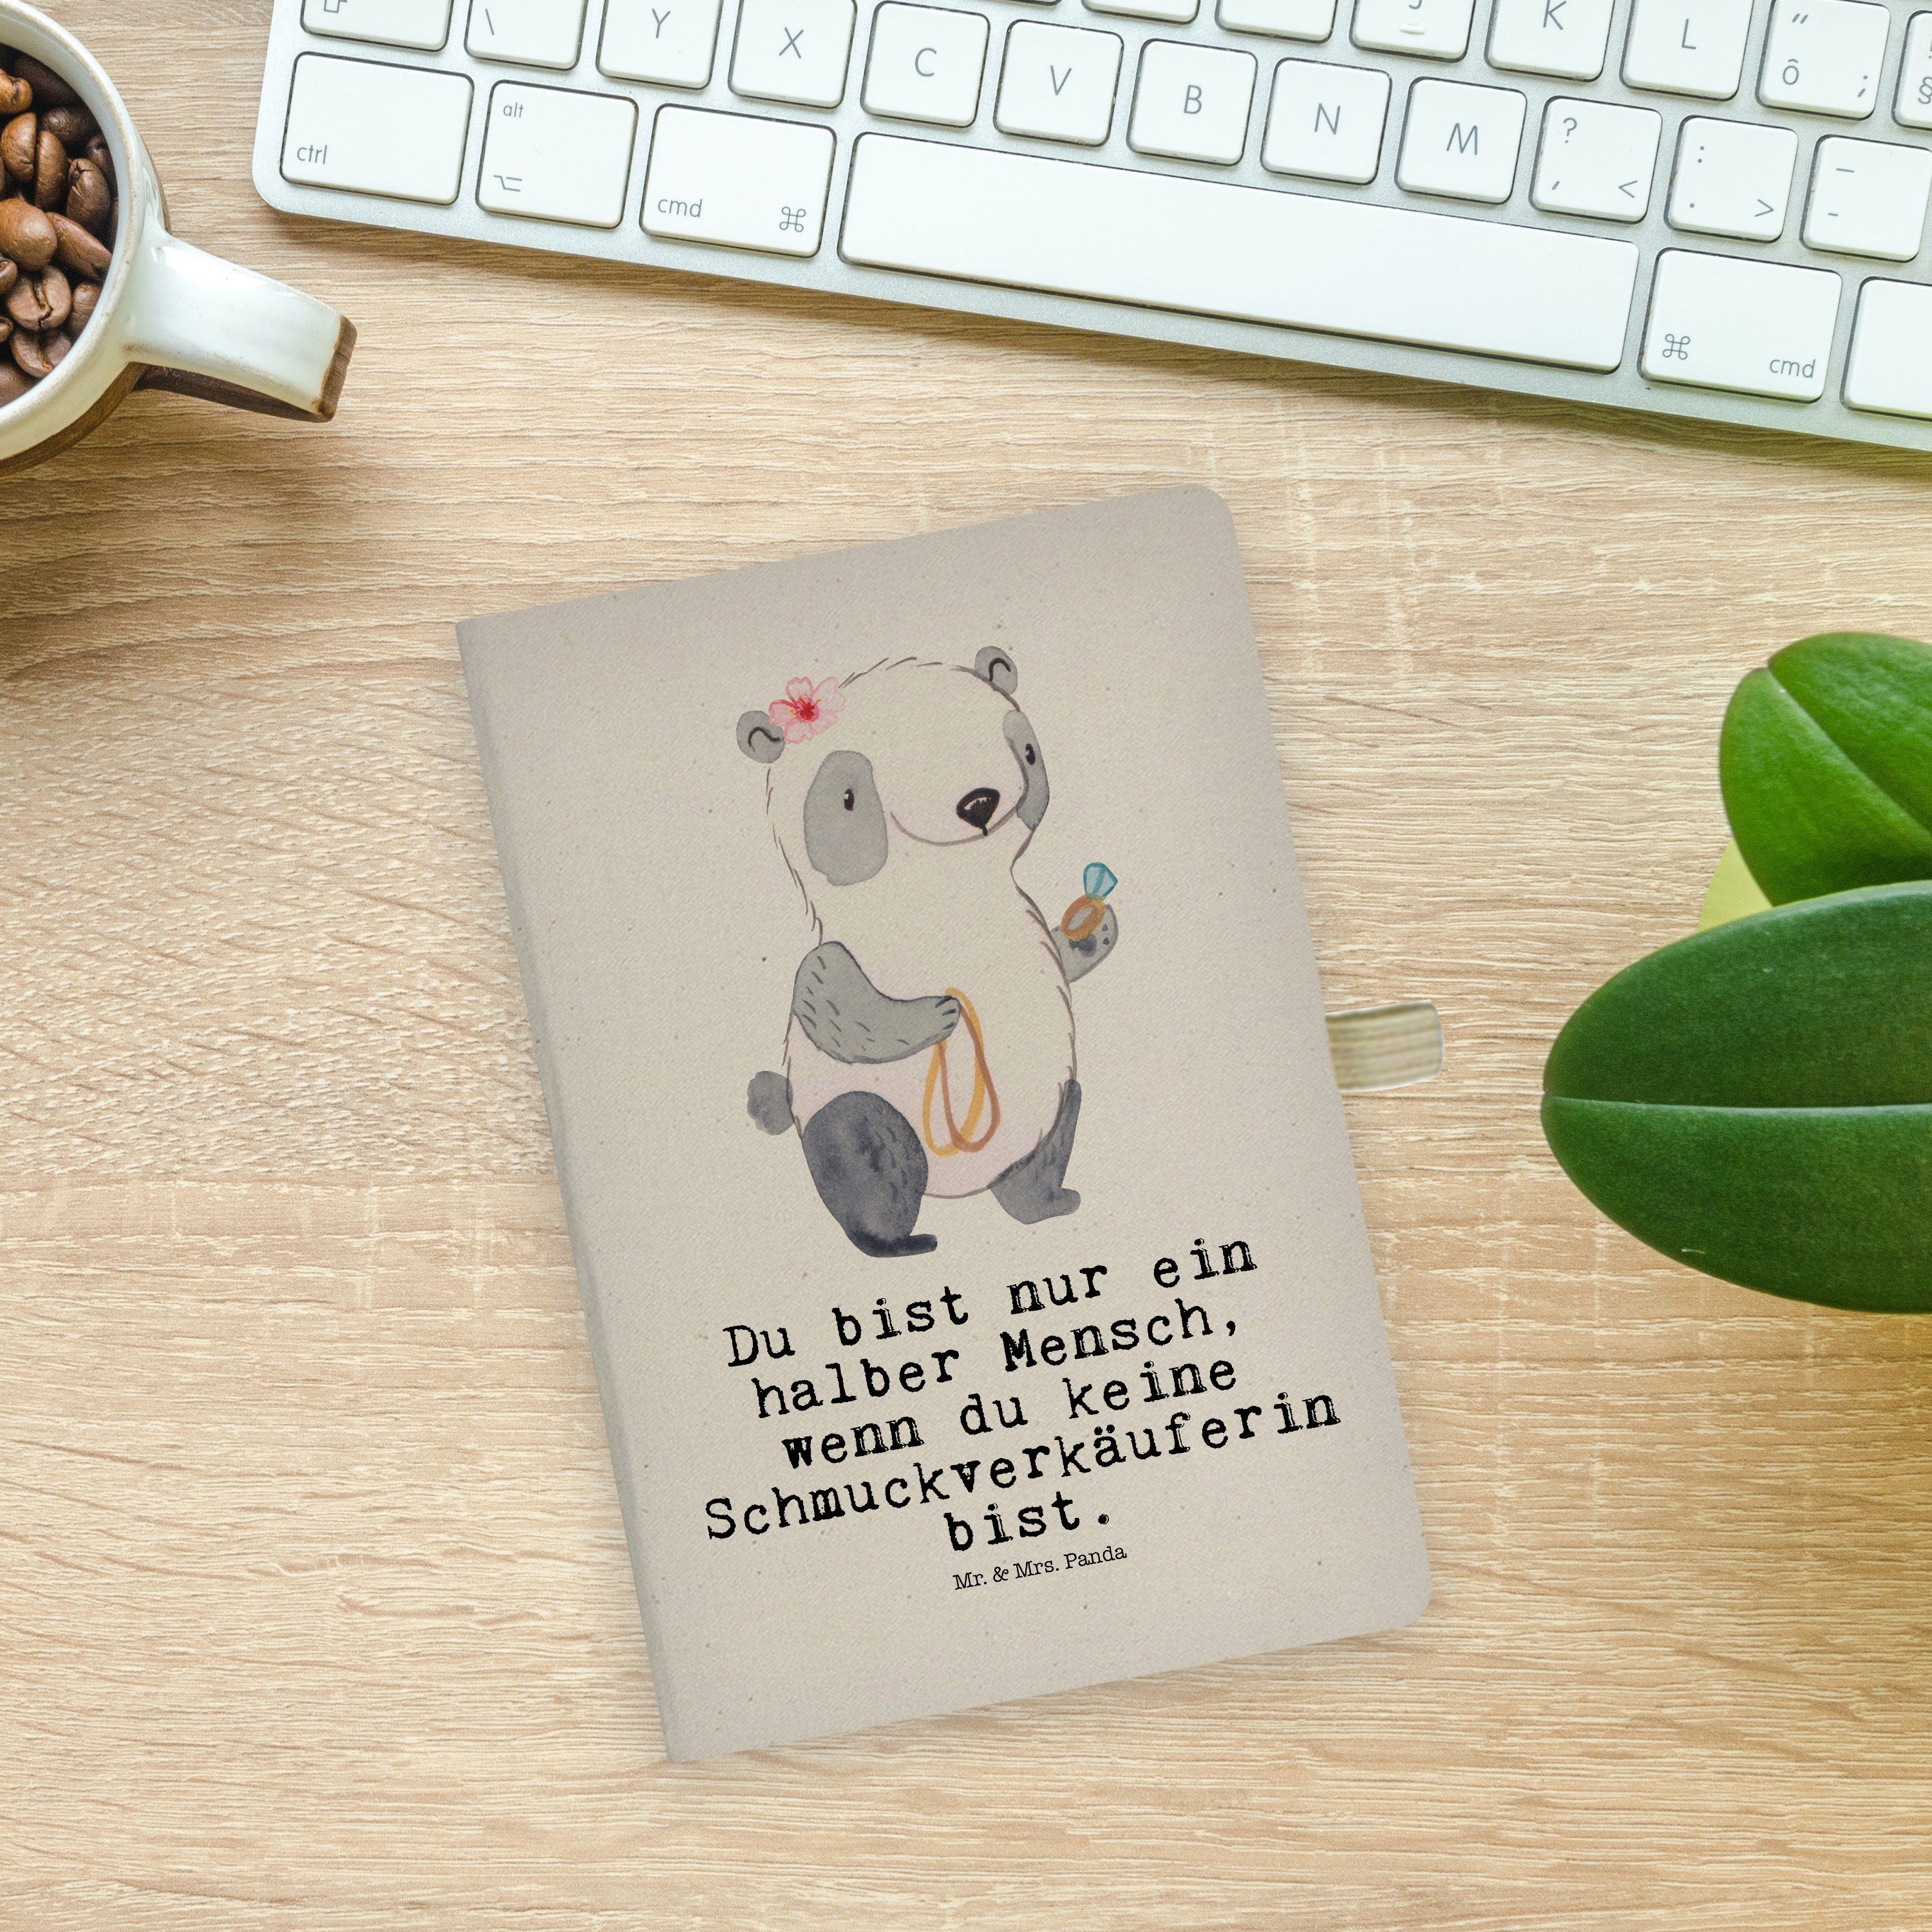 Schmied, Panda Panda Notize - Herz Transparent mit - & Mrs. Notizbuch Mrs. Mr. Schmuckverkäuferin Geschenk, & Mr.